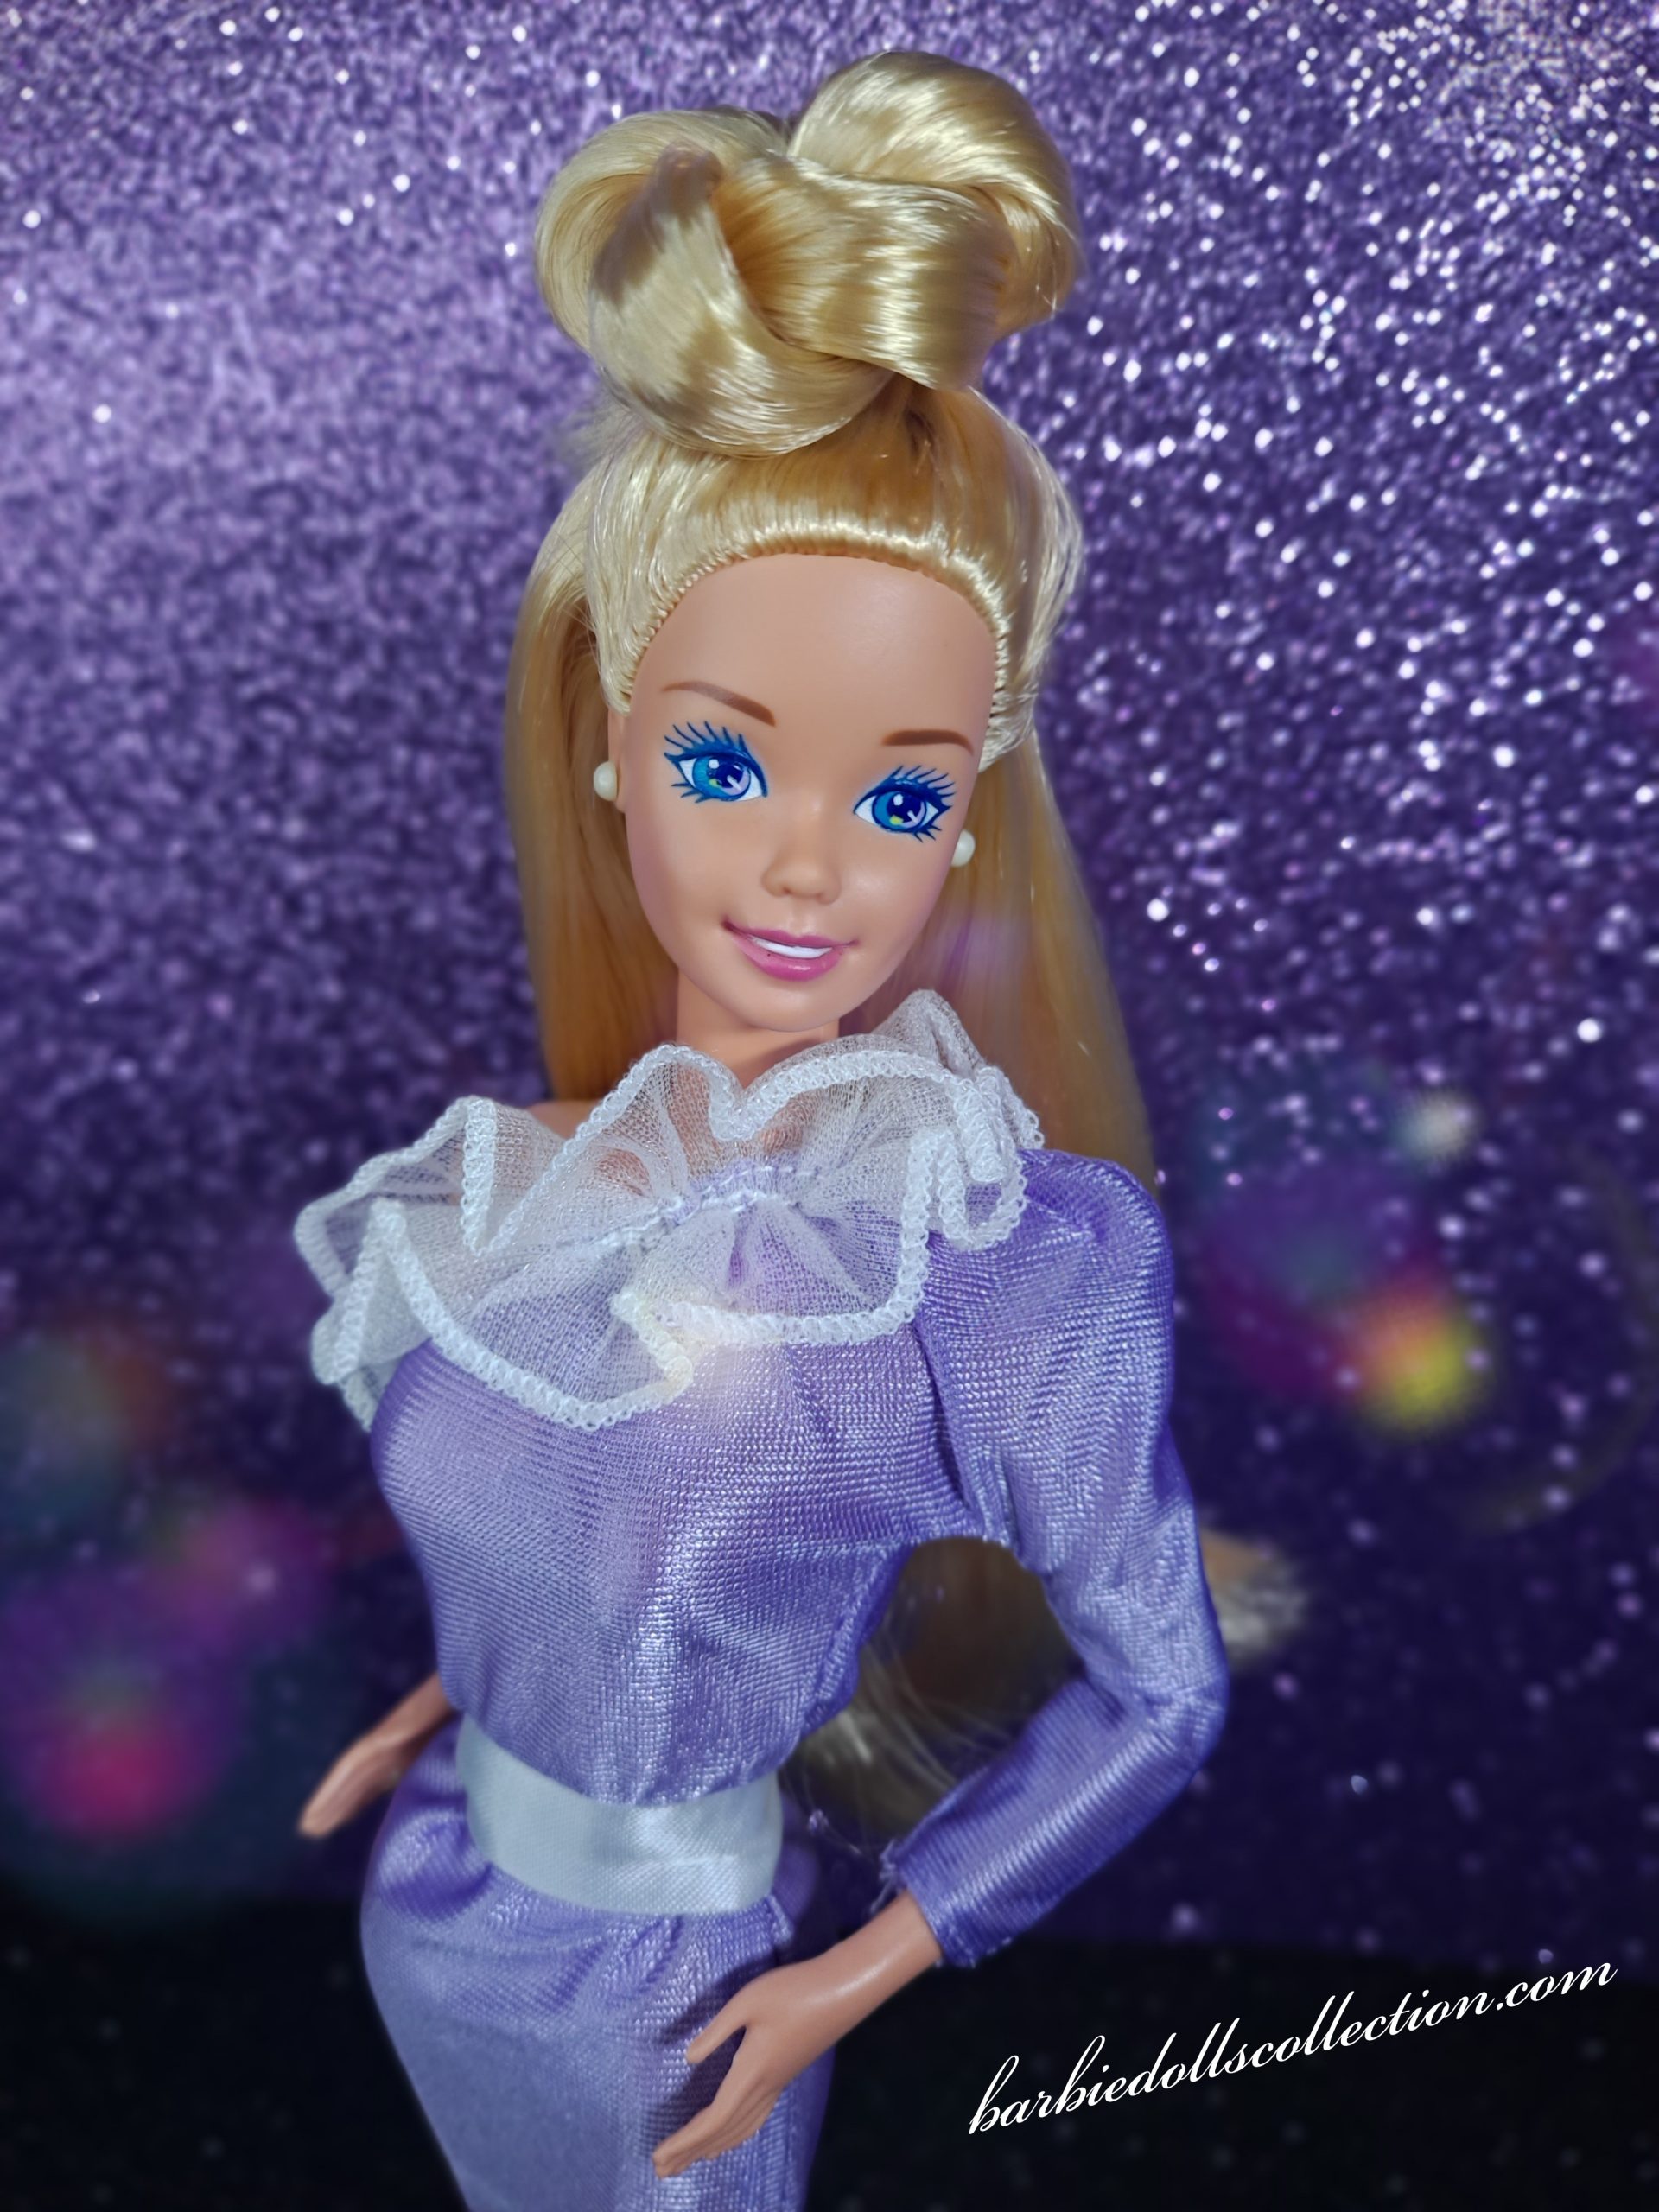 Barbie Easy Living Fashions #8594